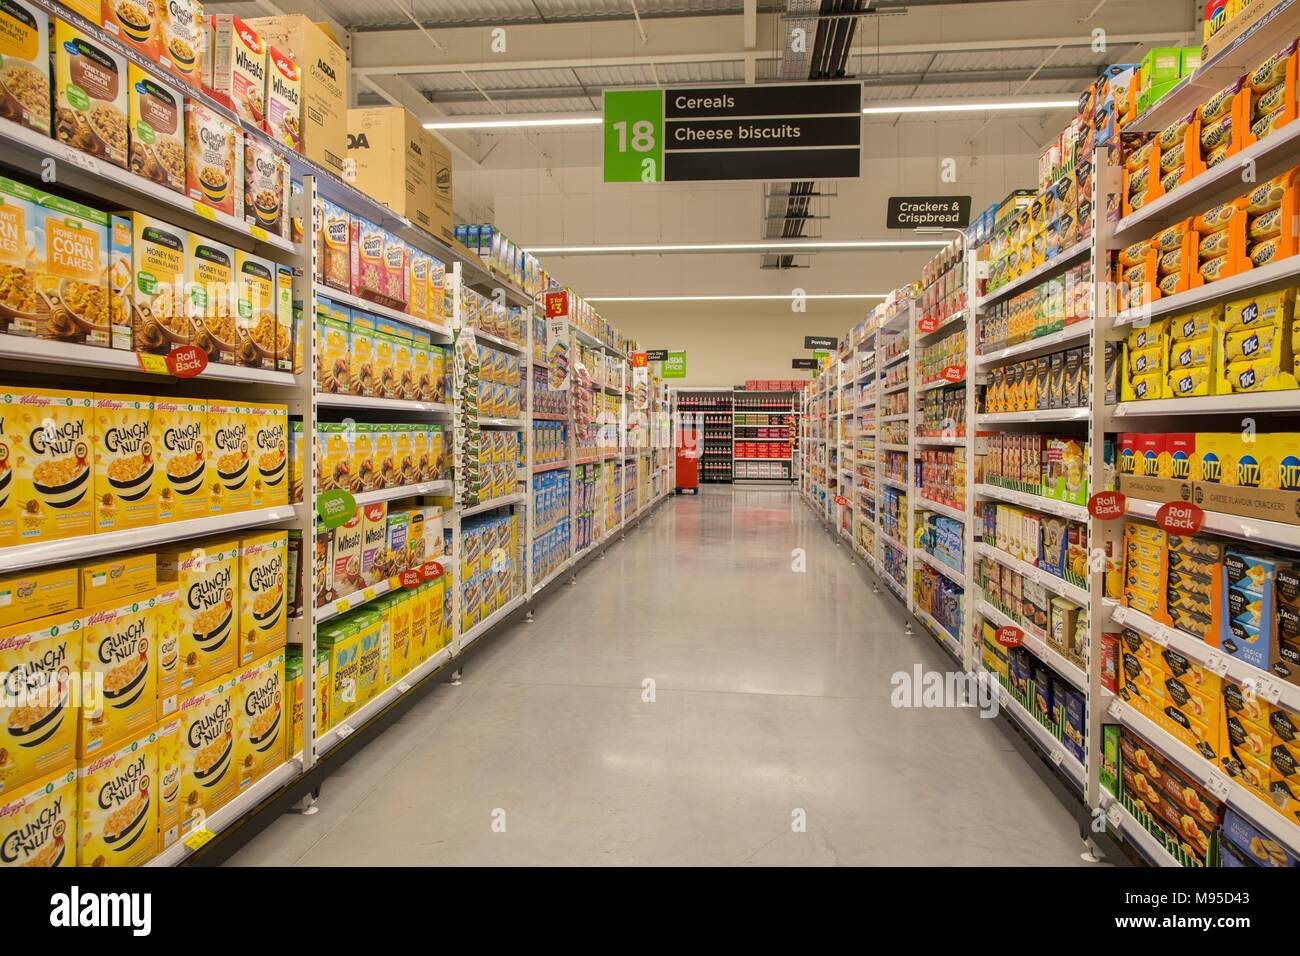 Des biscuits au fromage et céréales complètes sur des étagères dans un supermarché Asda. Banque D'Images